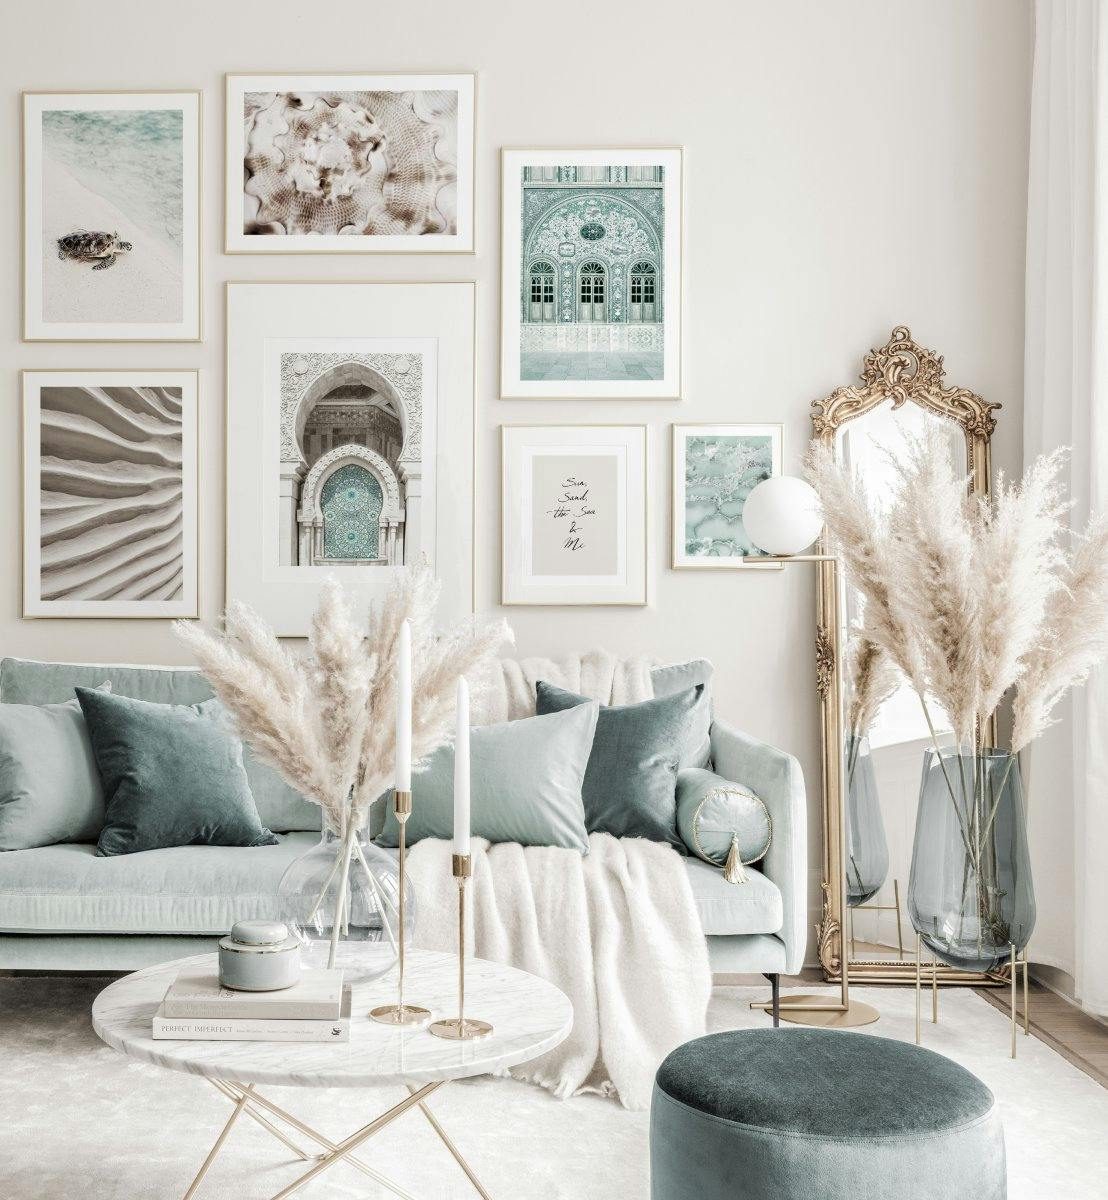 Modrý interiér obrázky léta a zlaté rámy